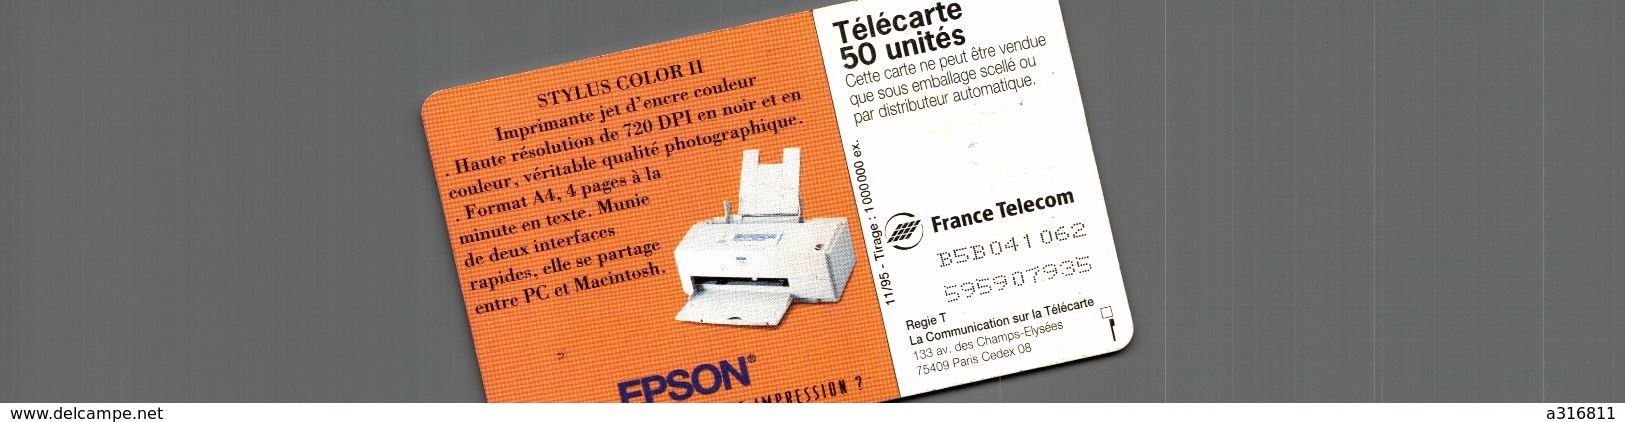 EPSON - Telefoonkaarten Voor Particulieren